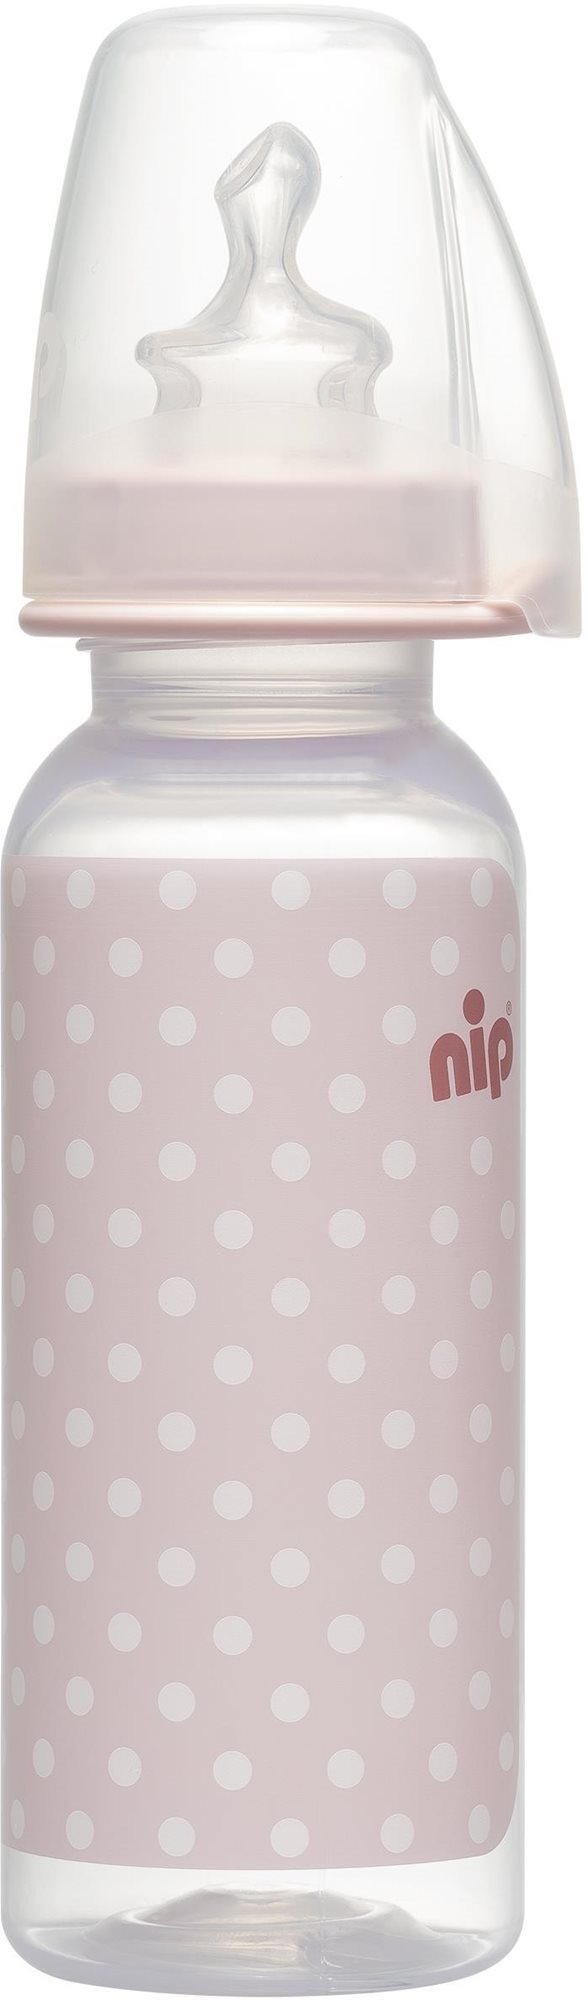 NIP Cumisüveg PP Trendy, szilikon-M, 250 ml, lány